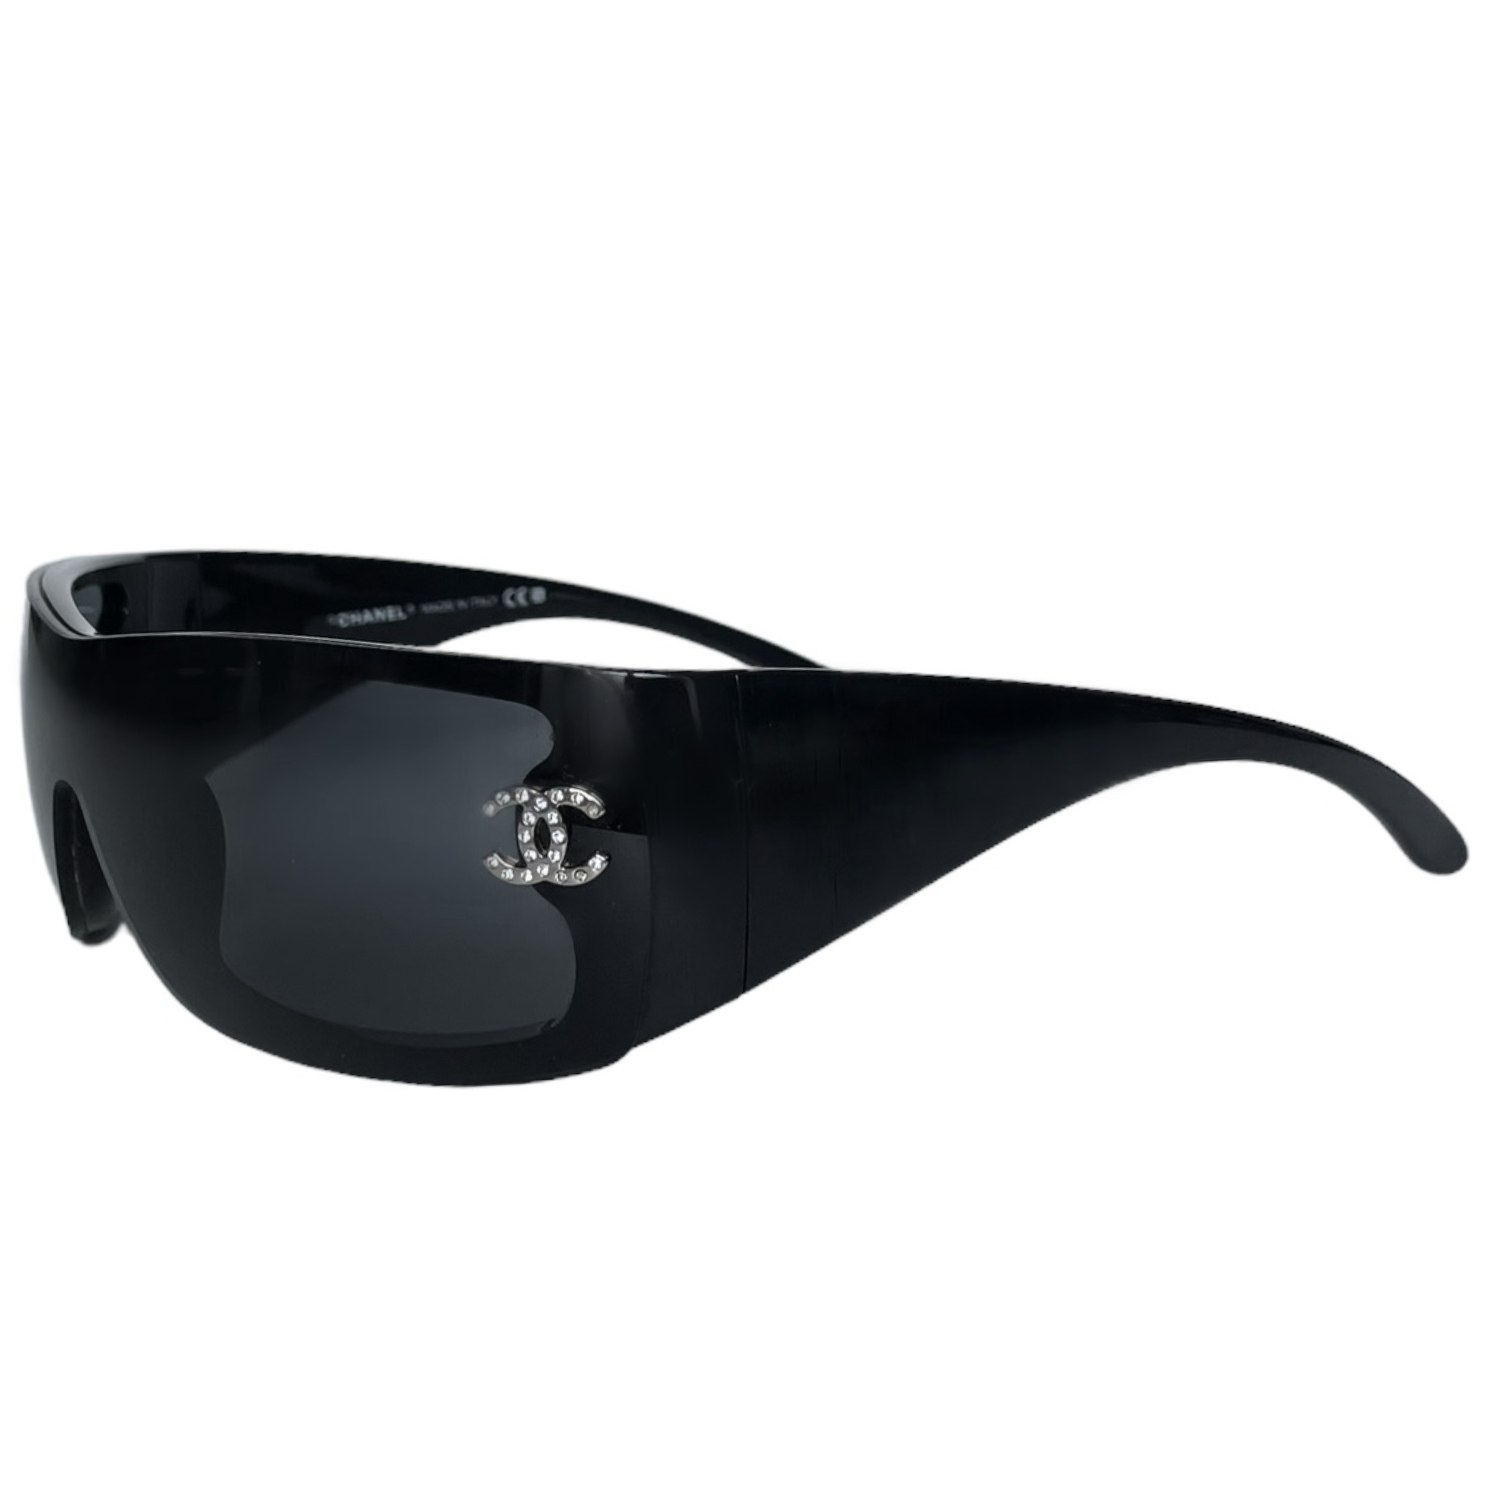 Chanel Diamante Wraparound Sunglasses in Black / Silver